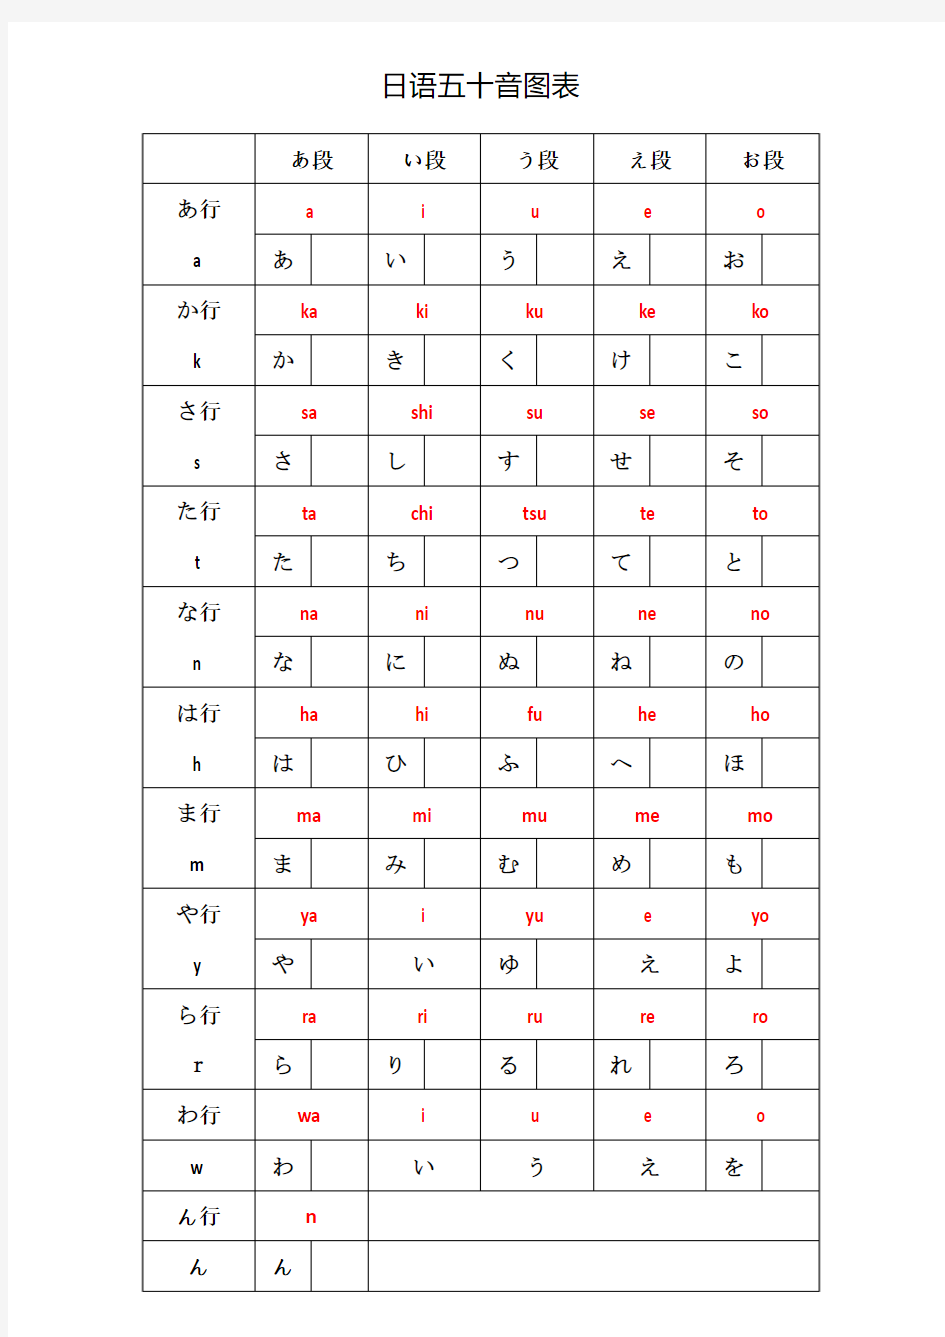 日语五十音图表 - 片假名